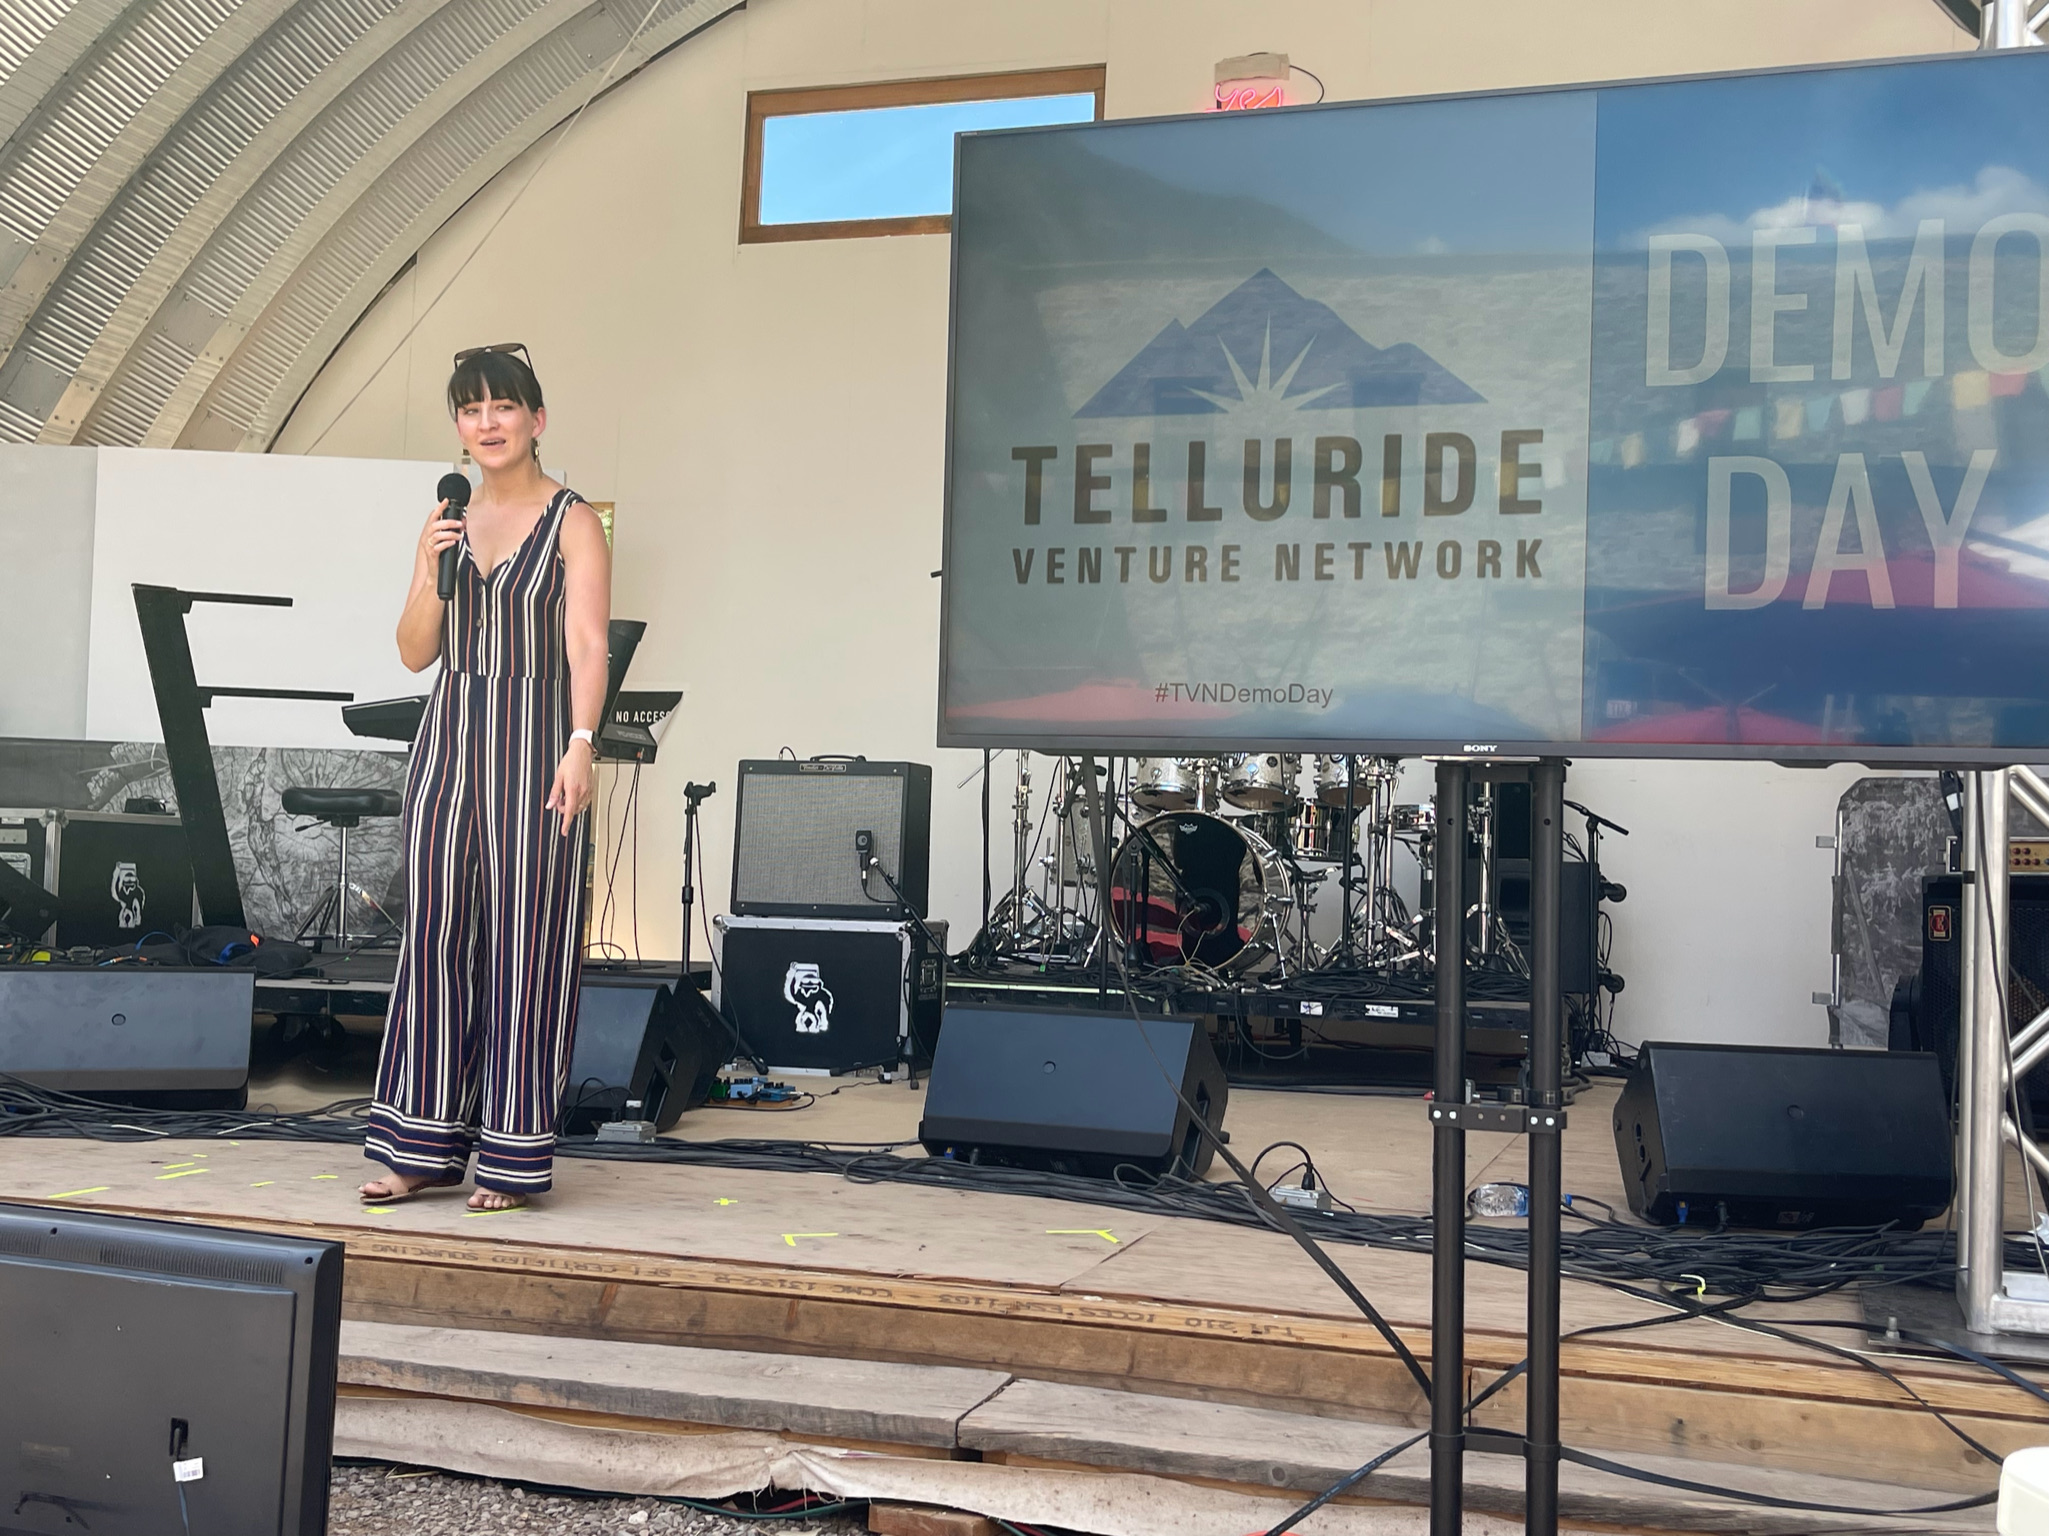 Telluride Venture Network’s 10th Annual DEMO DAY